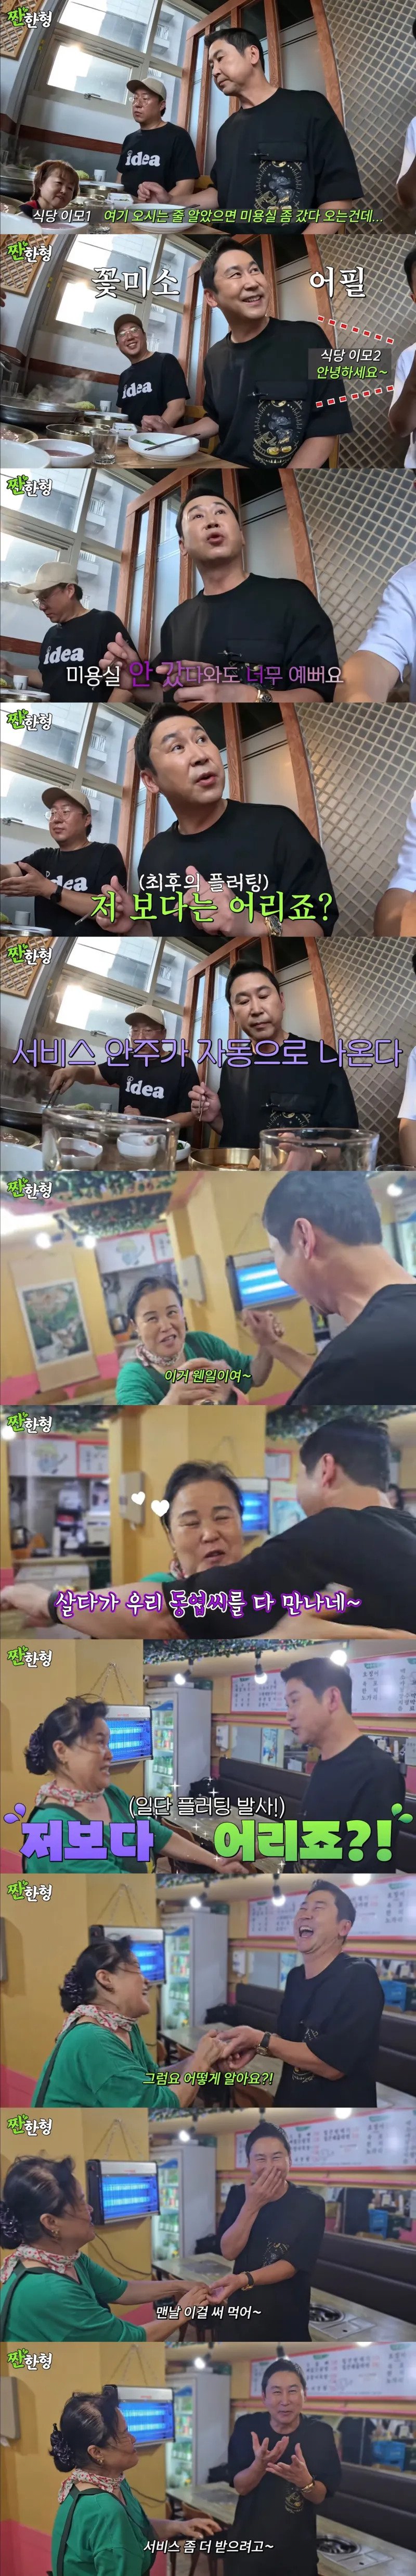 개인 유튜브에서 신동엽이 밝힌 식당 이모들 꼬시는 이유(0)